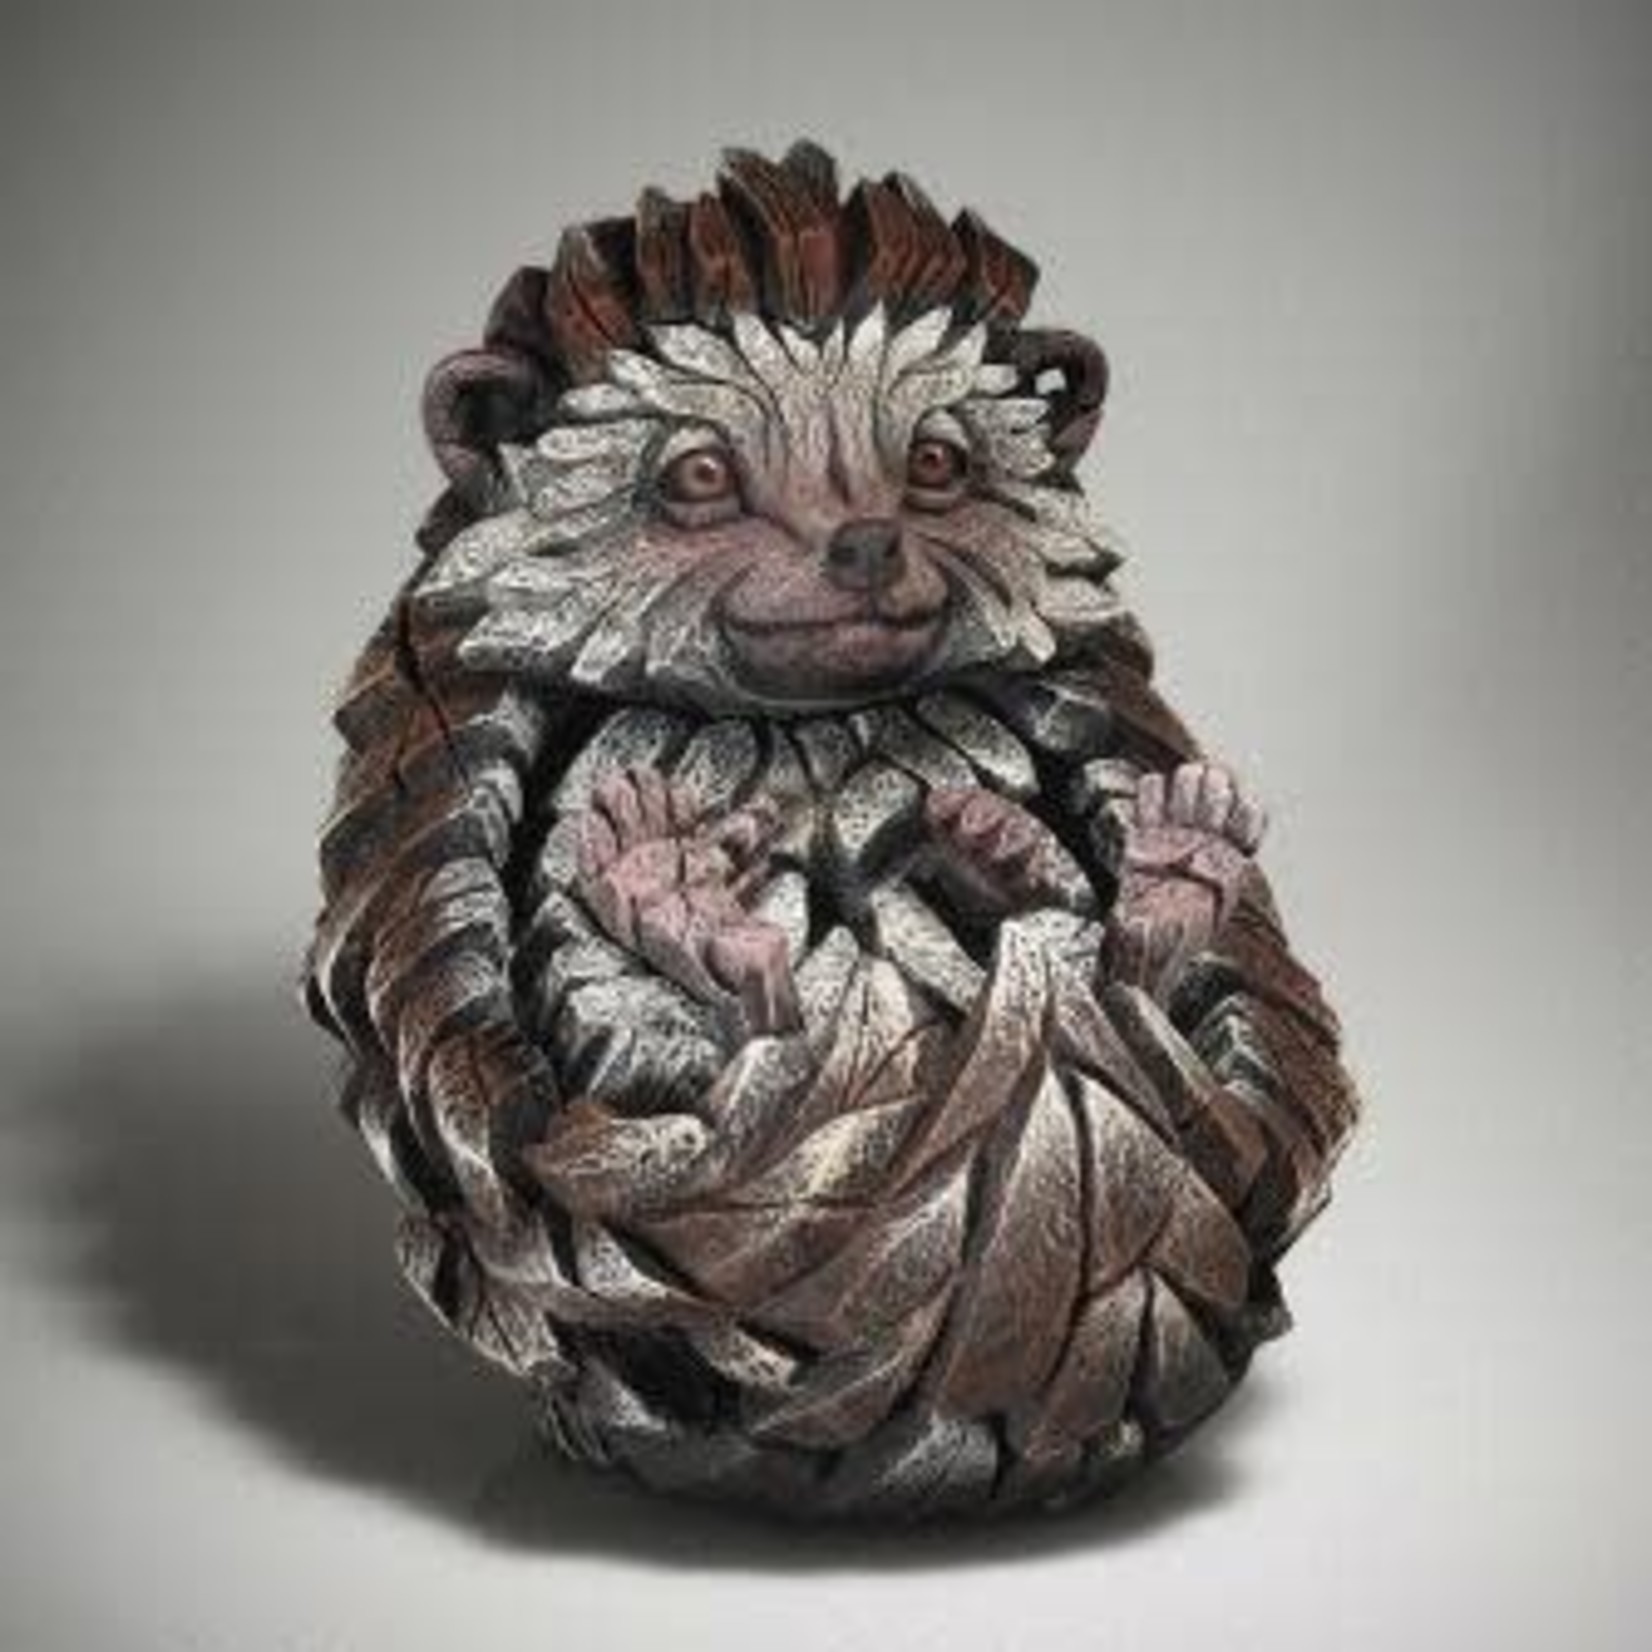 Edge Sculpture Hedgehog Figure Buckley